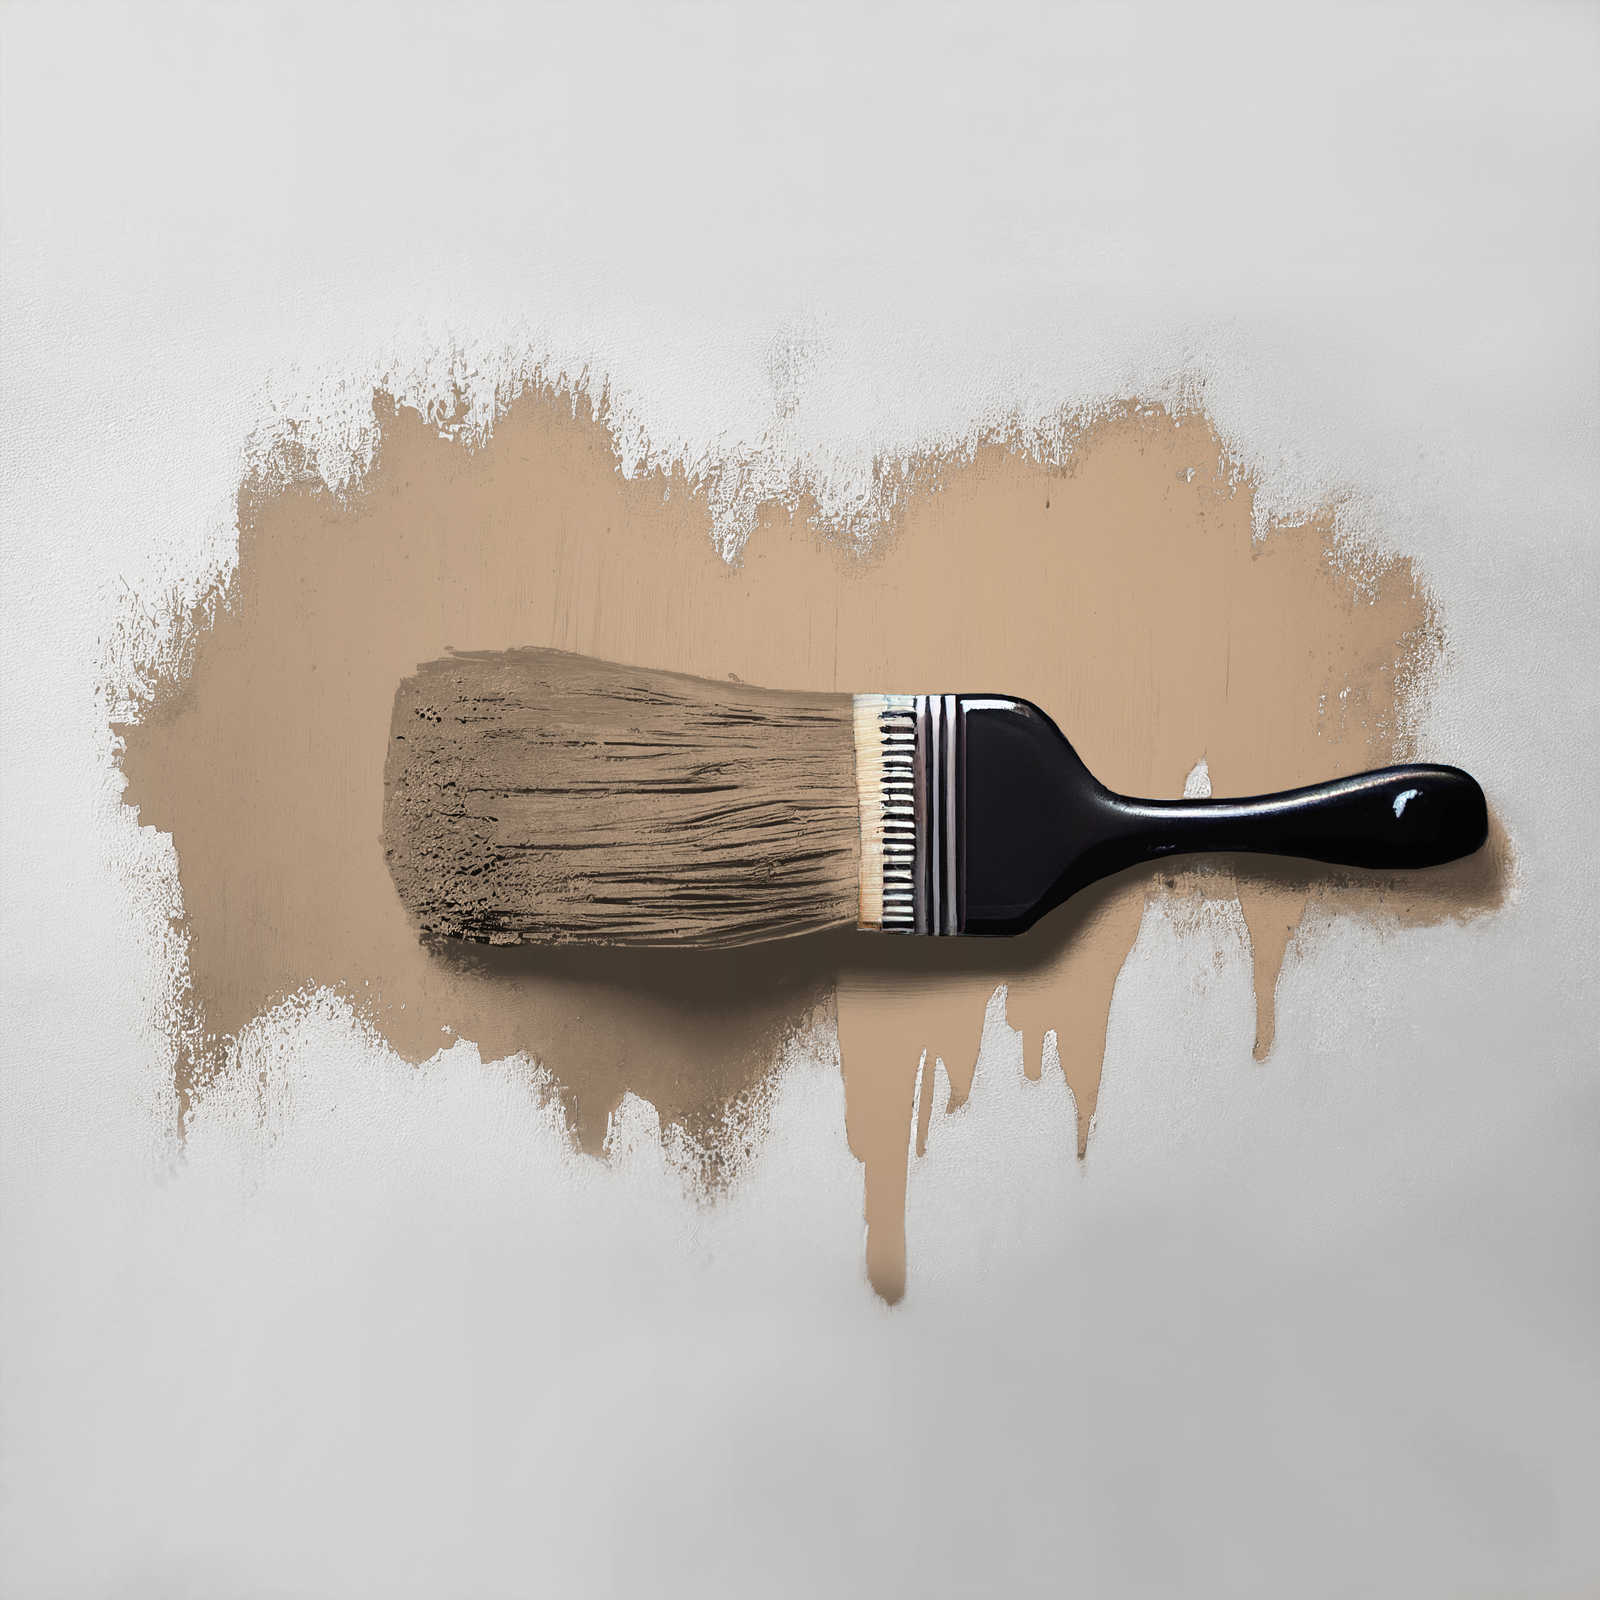             Wall Paint TCK6011 »Whispy Walnut« in intensive beige – 2.5 litre
        